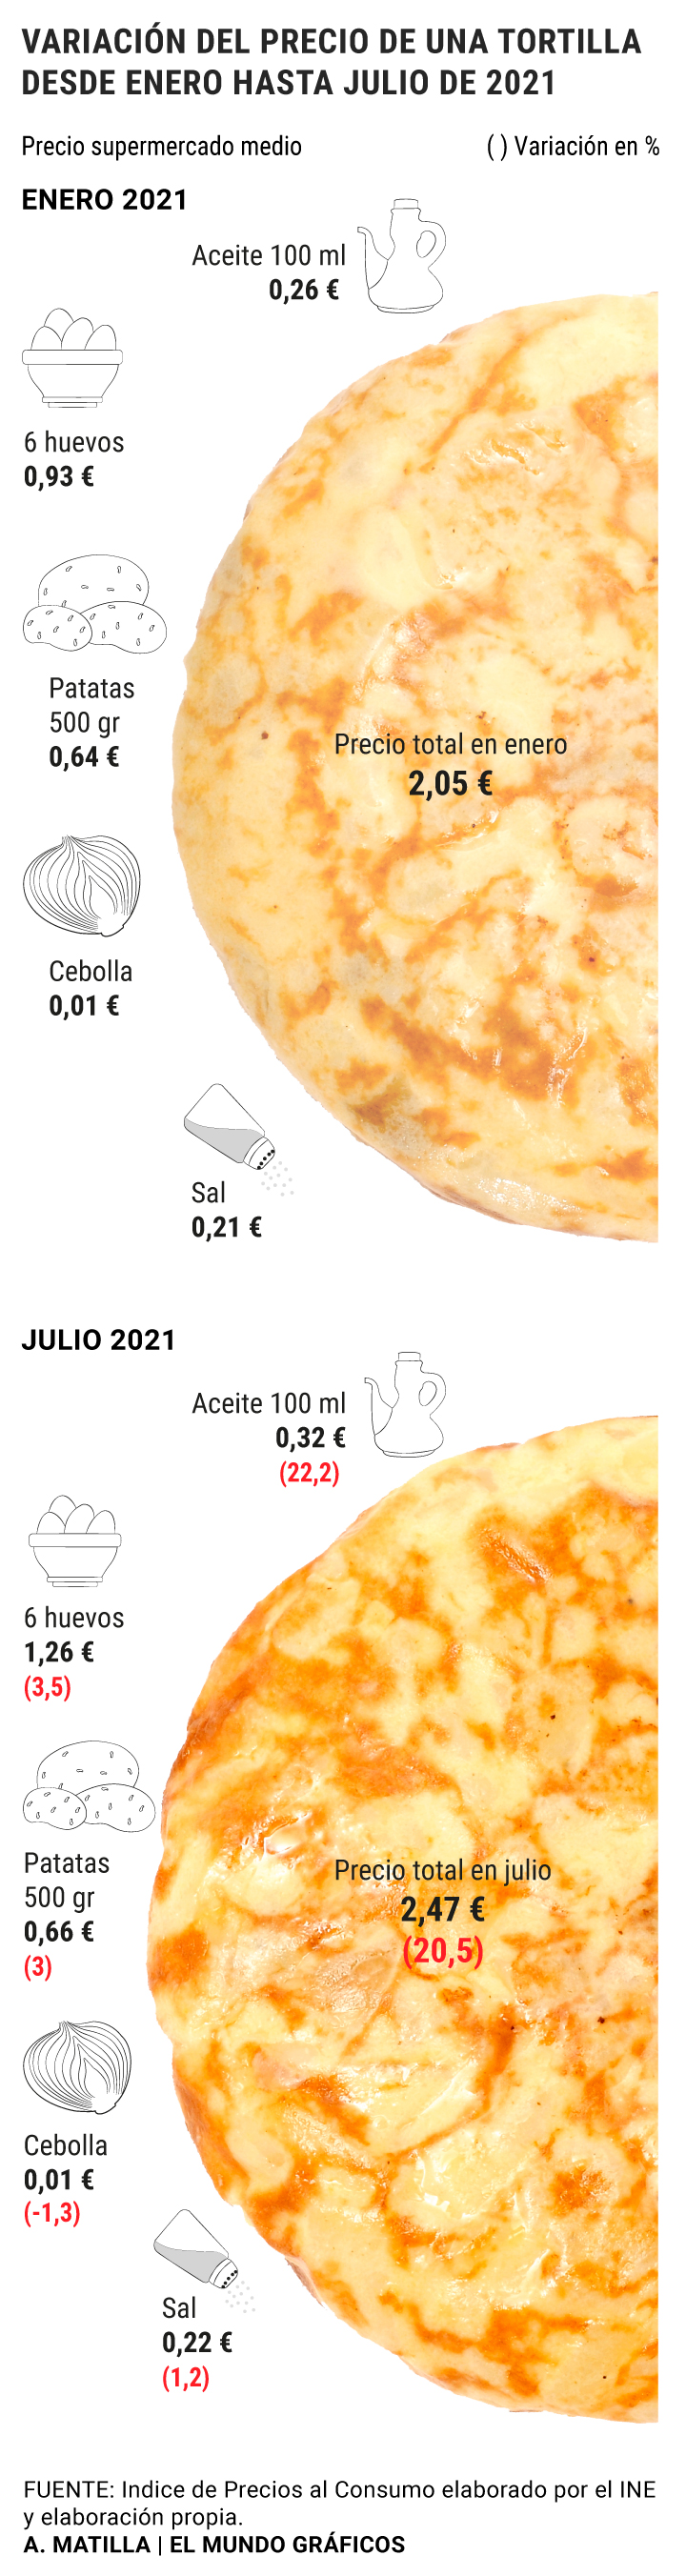 2,47€ cuesta hacer una Tortilla de patatas según el mundo - Foro Coches